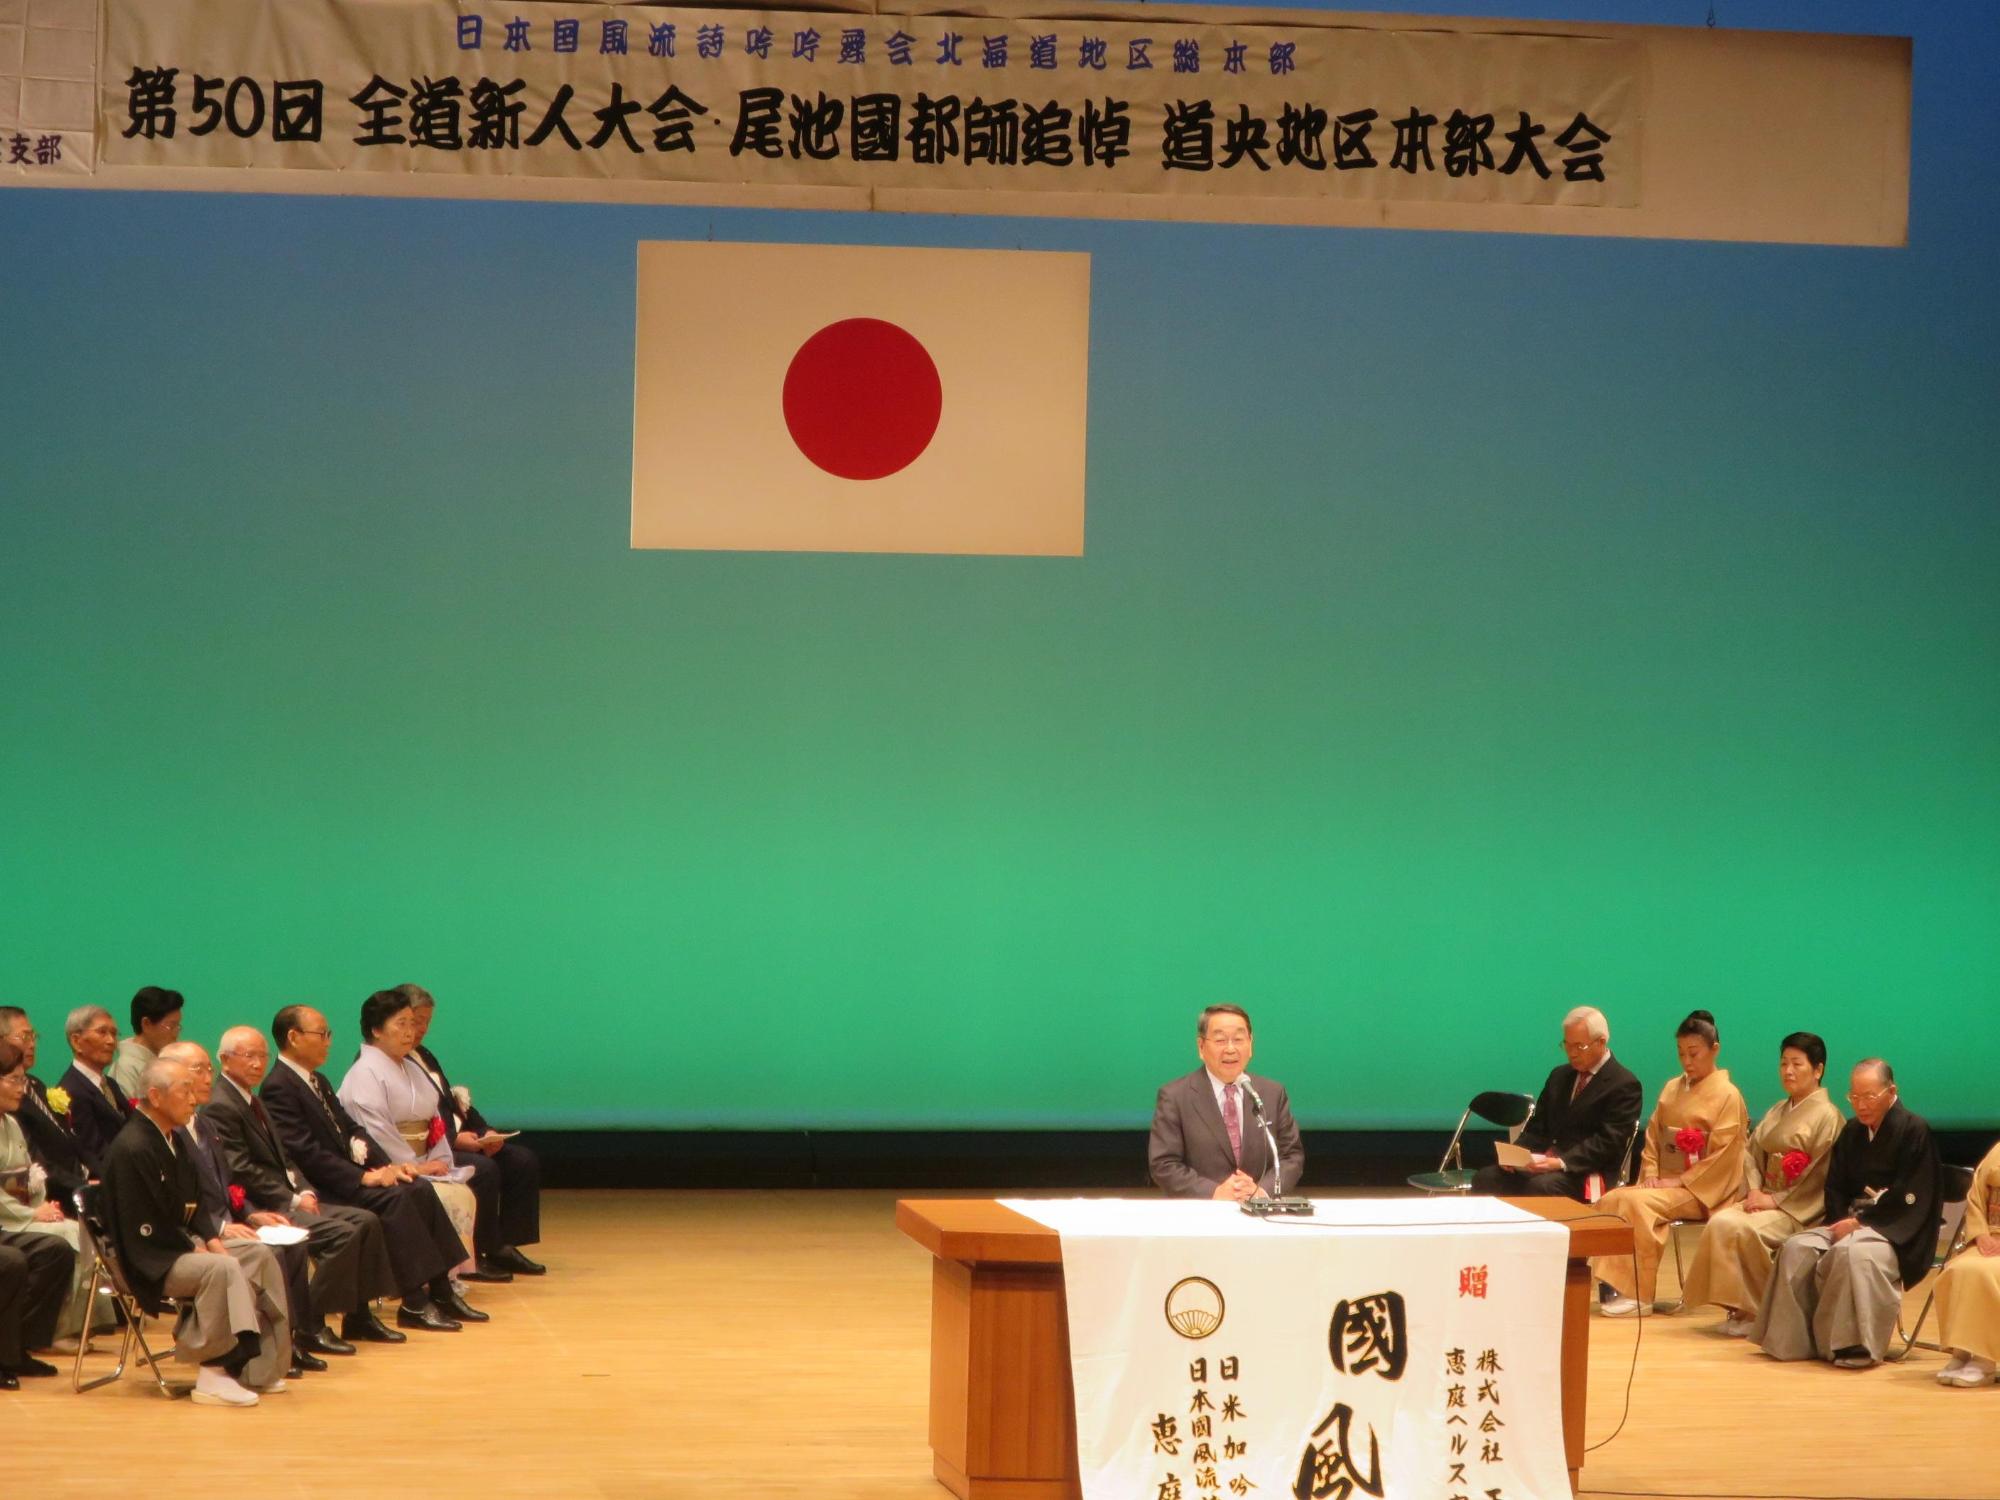 「日本国風流詩吟吟舞会」にて挨拶をしている原田市長の写真